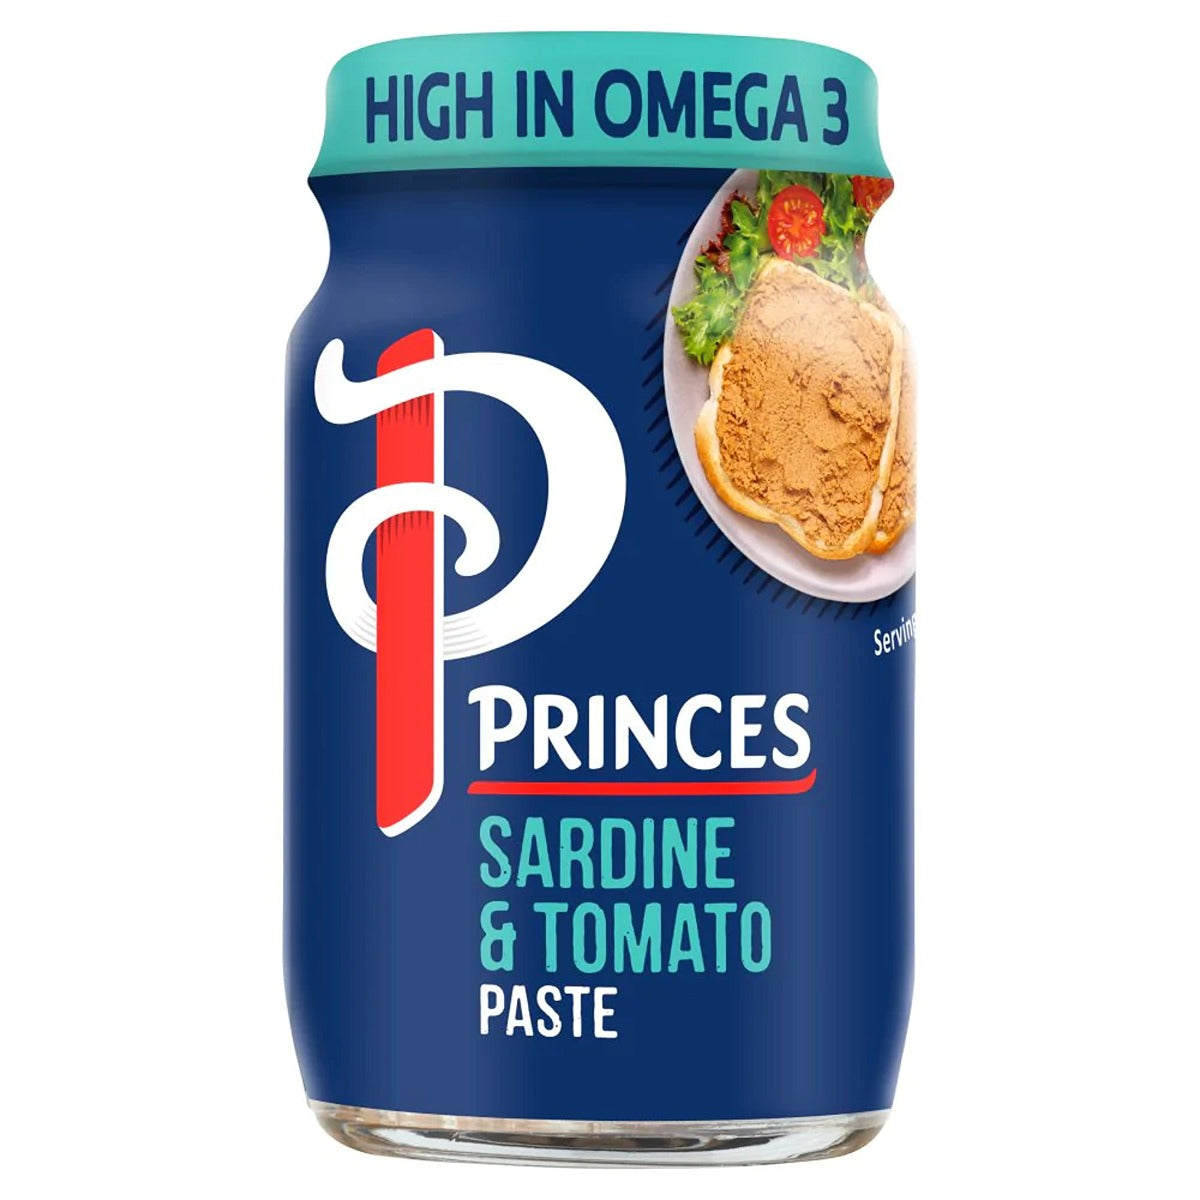 Princes - Sardine & Tomato Paste - 75g and Princes sardine and tomato paste.